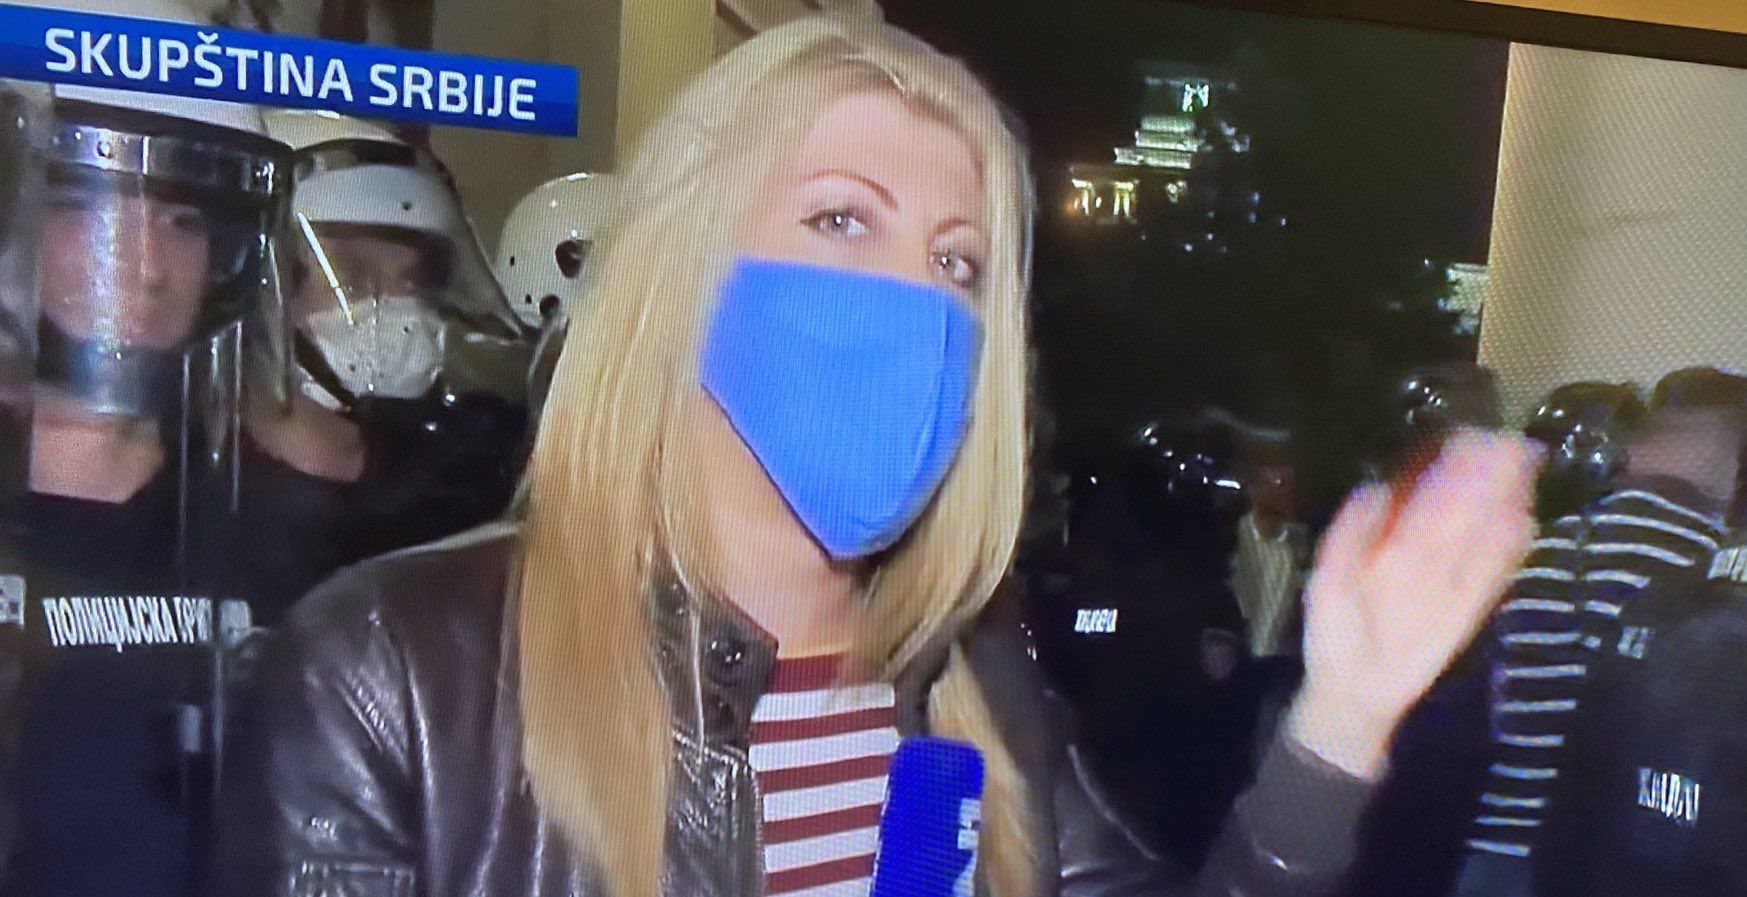 Hrabre reporterke izvještavale s prosvjeda u Beogradu: Nisu ih omeli suzavci; upozoravale prosvjednike da nose maske